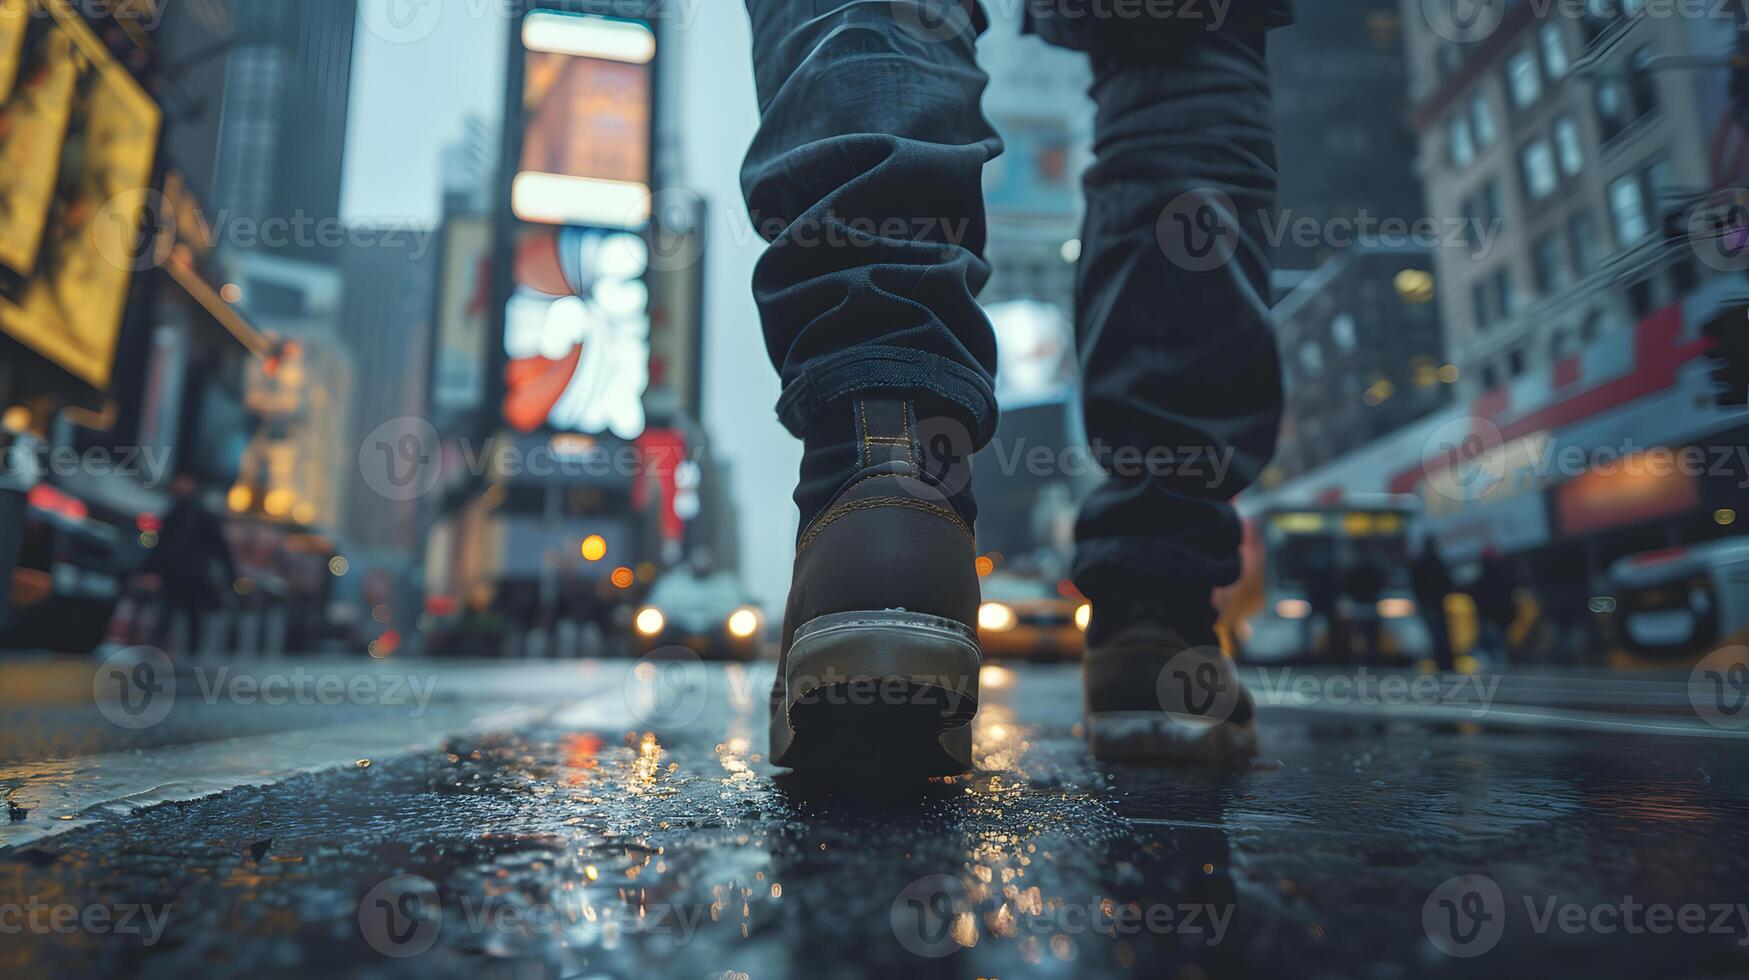 en mannens fötter i skor promenad längs en upptagen gata i en stor stad. neuralt nätverk foto